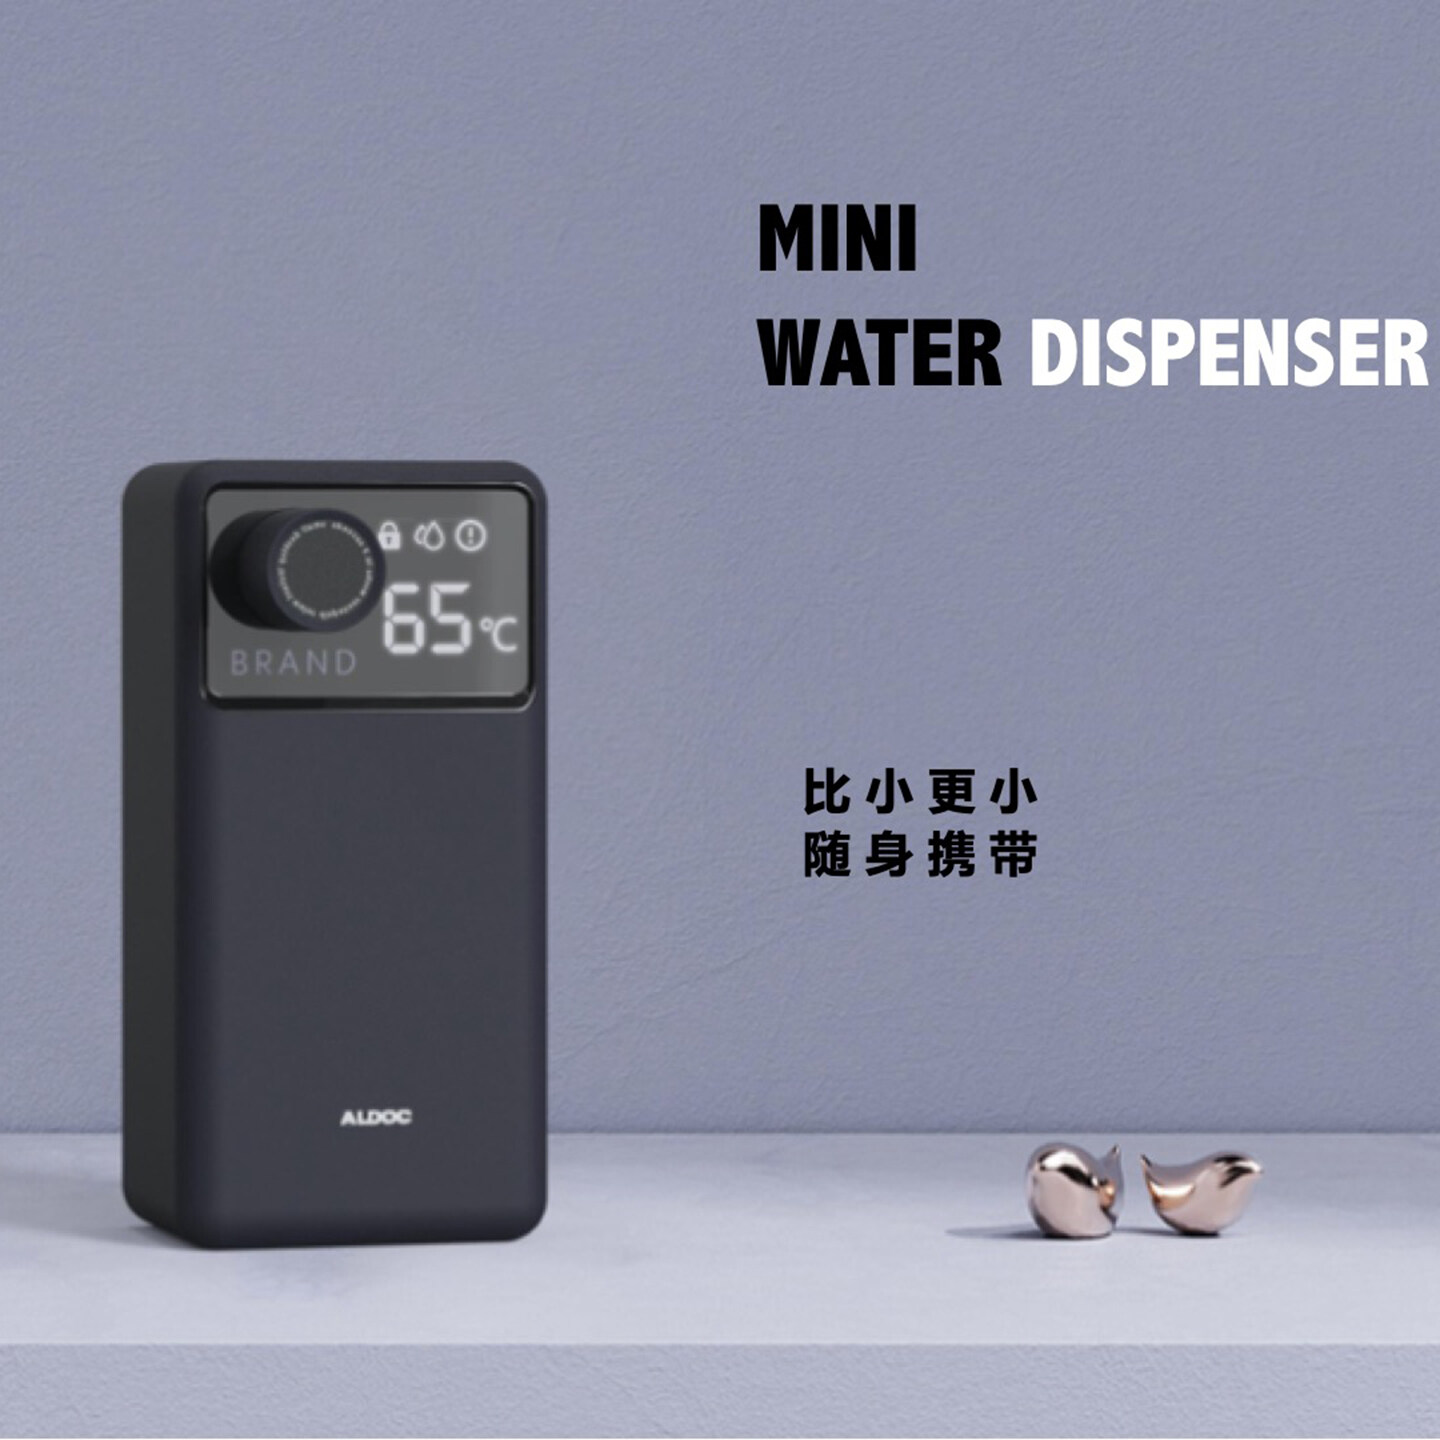 即热饮水机设计-口袋即热饮水机设计-艾尔达即热饮水机